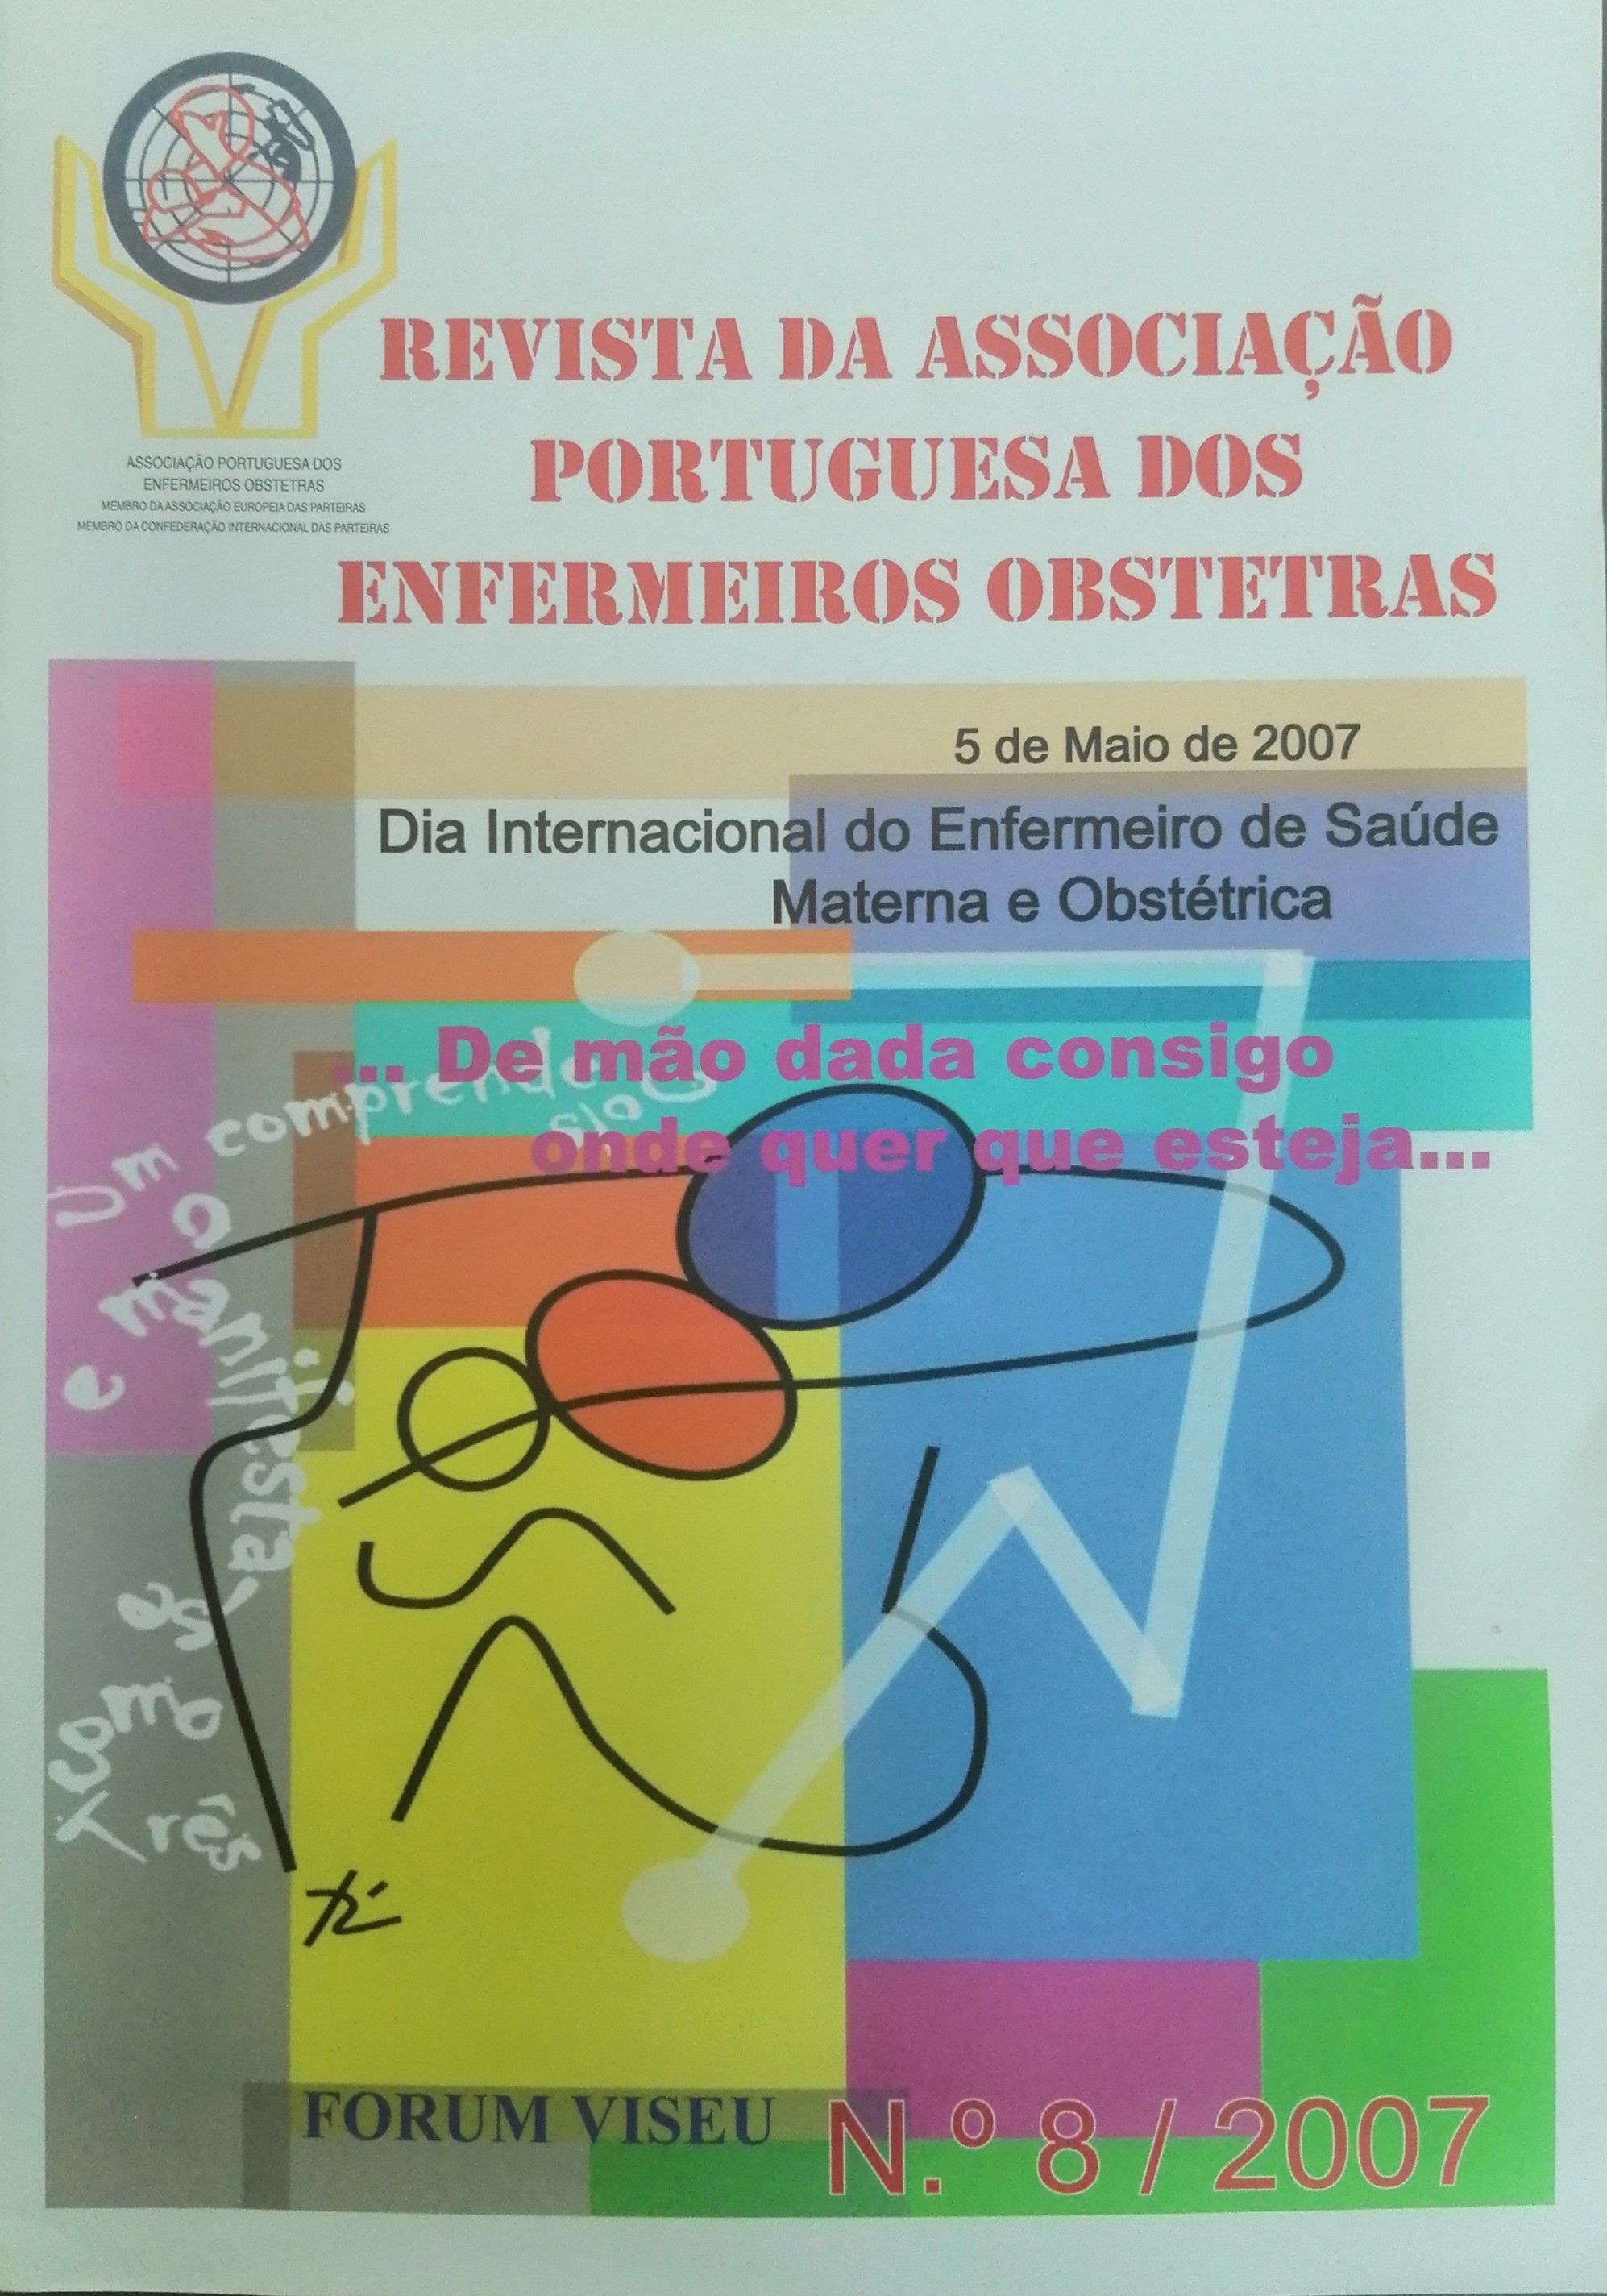 					Ver N.º 8 (2007): Revista da Associação Portuguesa de Enfermeiros Obstetras
				